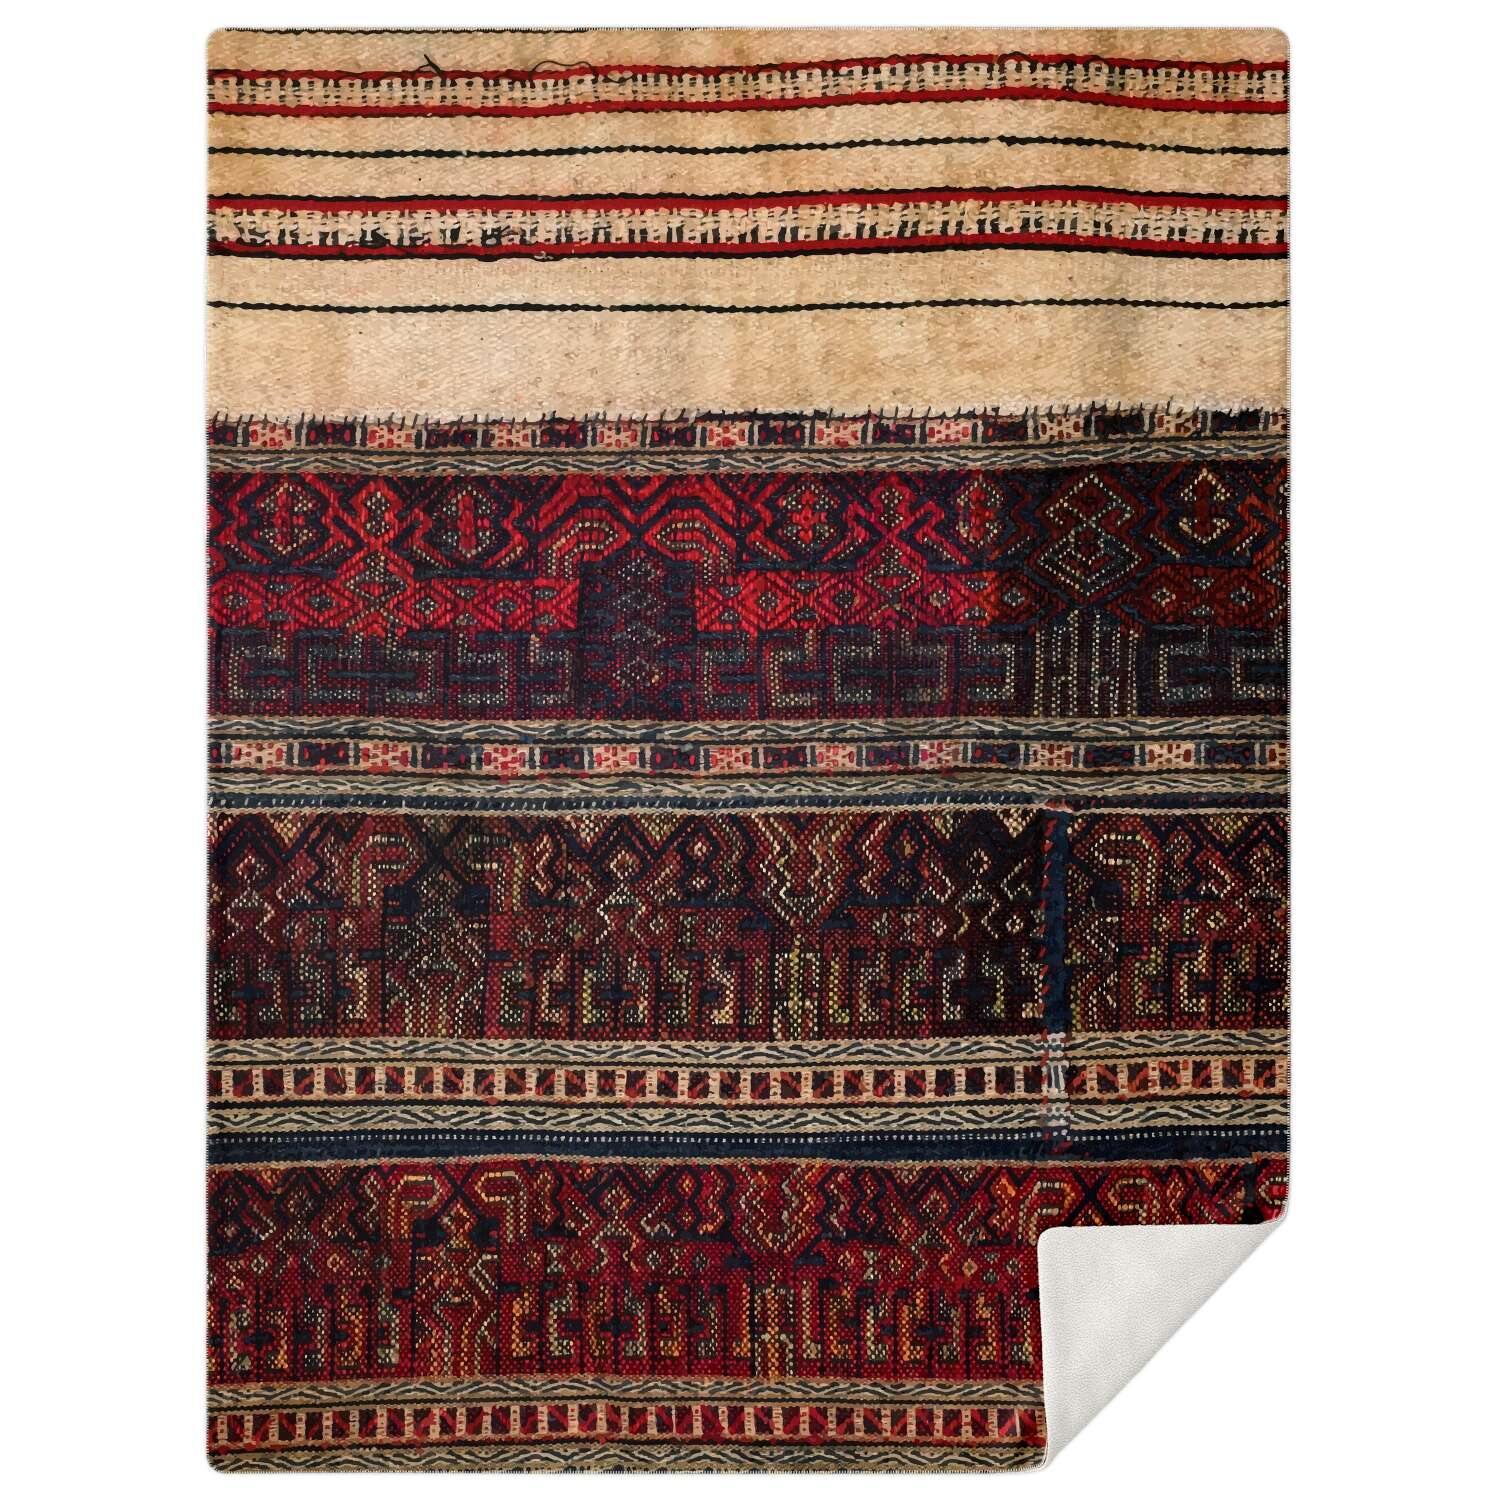 Sherpa Fleece Blanket Fleece Blanket - Li Culture Traditional Woven Design